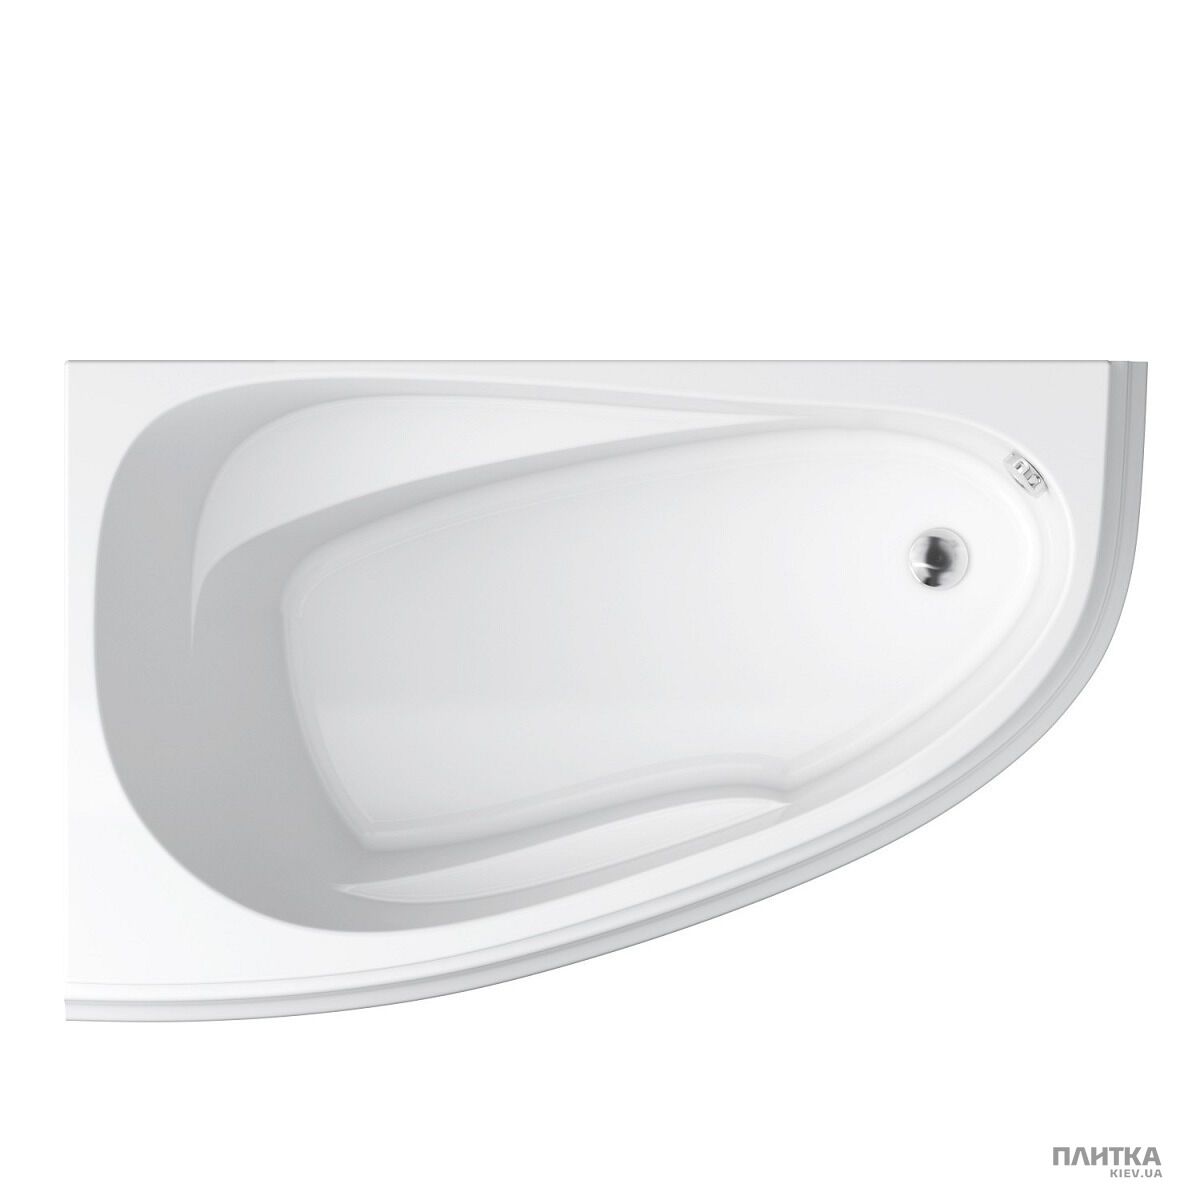 Акриловая ванна Cersanit Joanna New 160x95 см левая, асимметричная белый